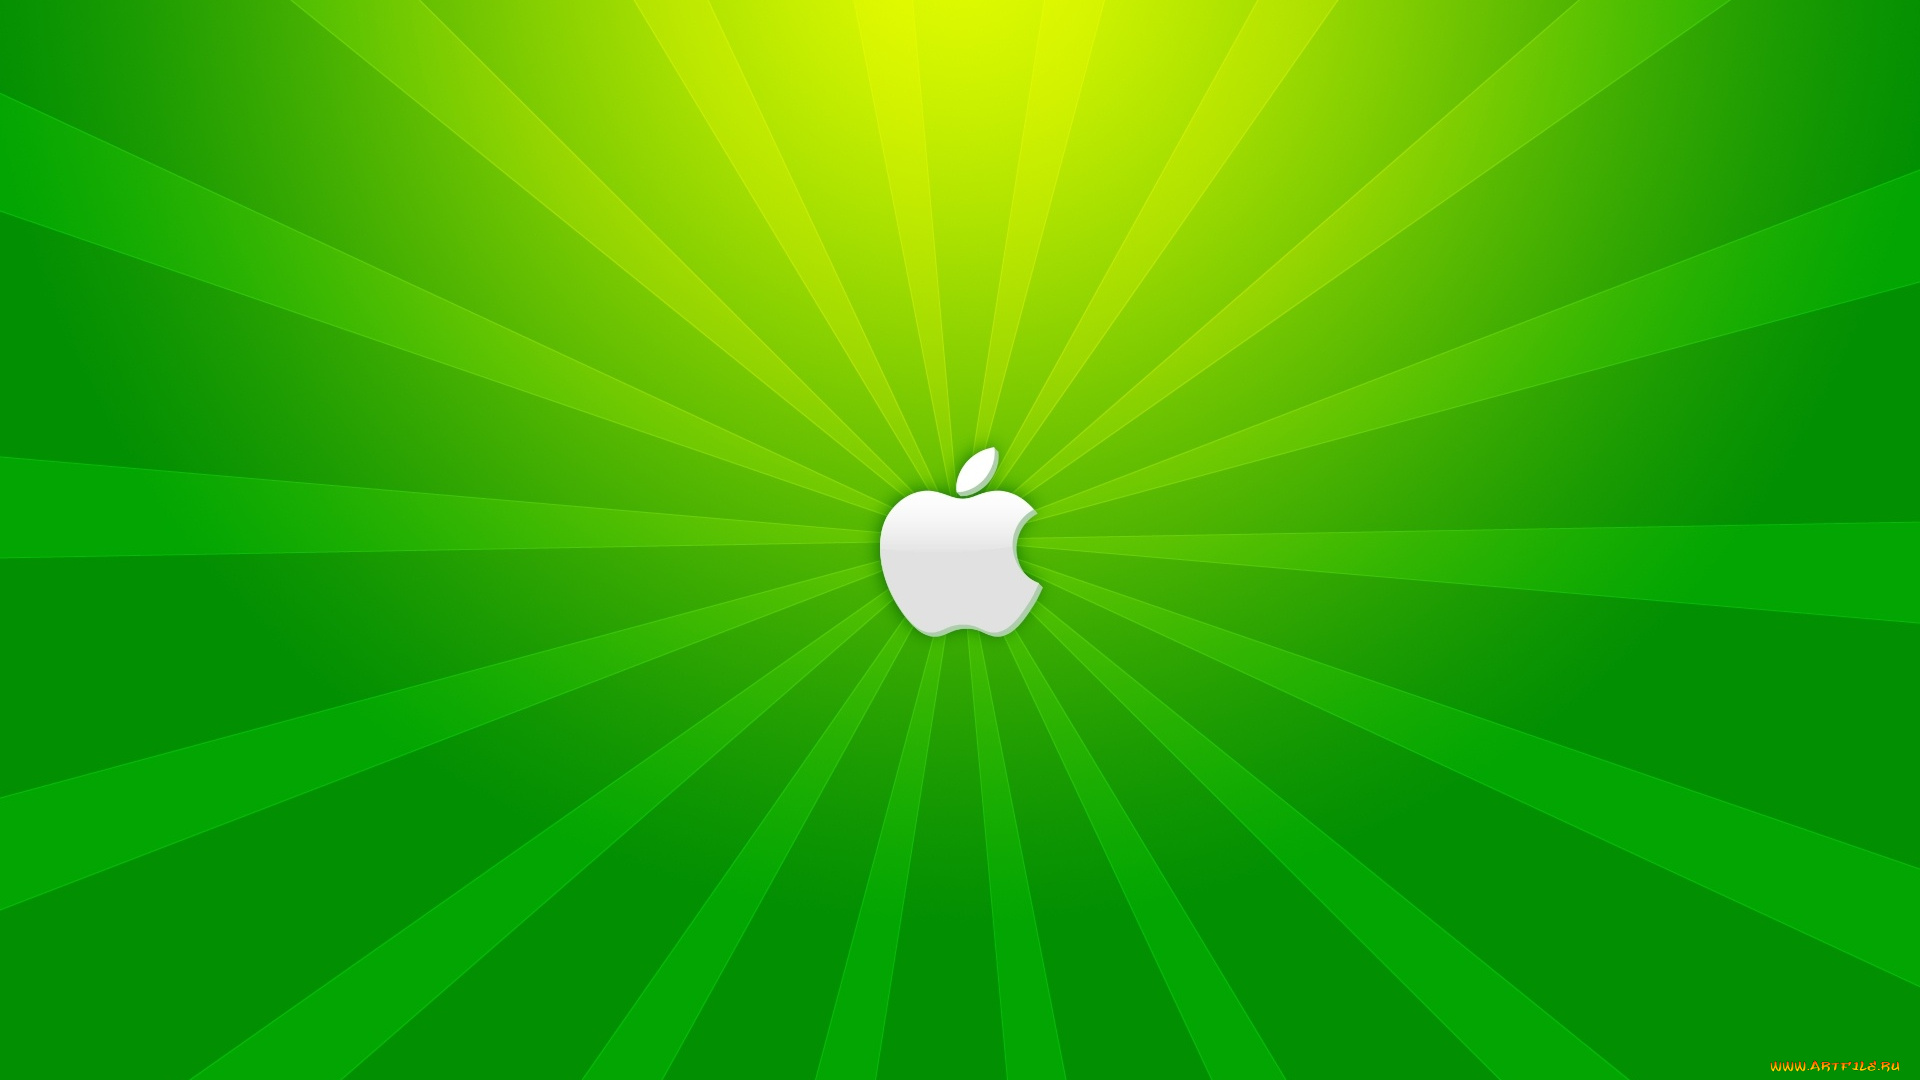 компьютеры, apple, полосы, лучи, яблоко, логотип, зеленый